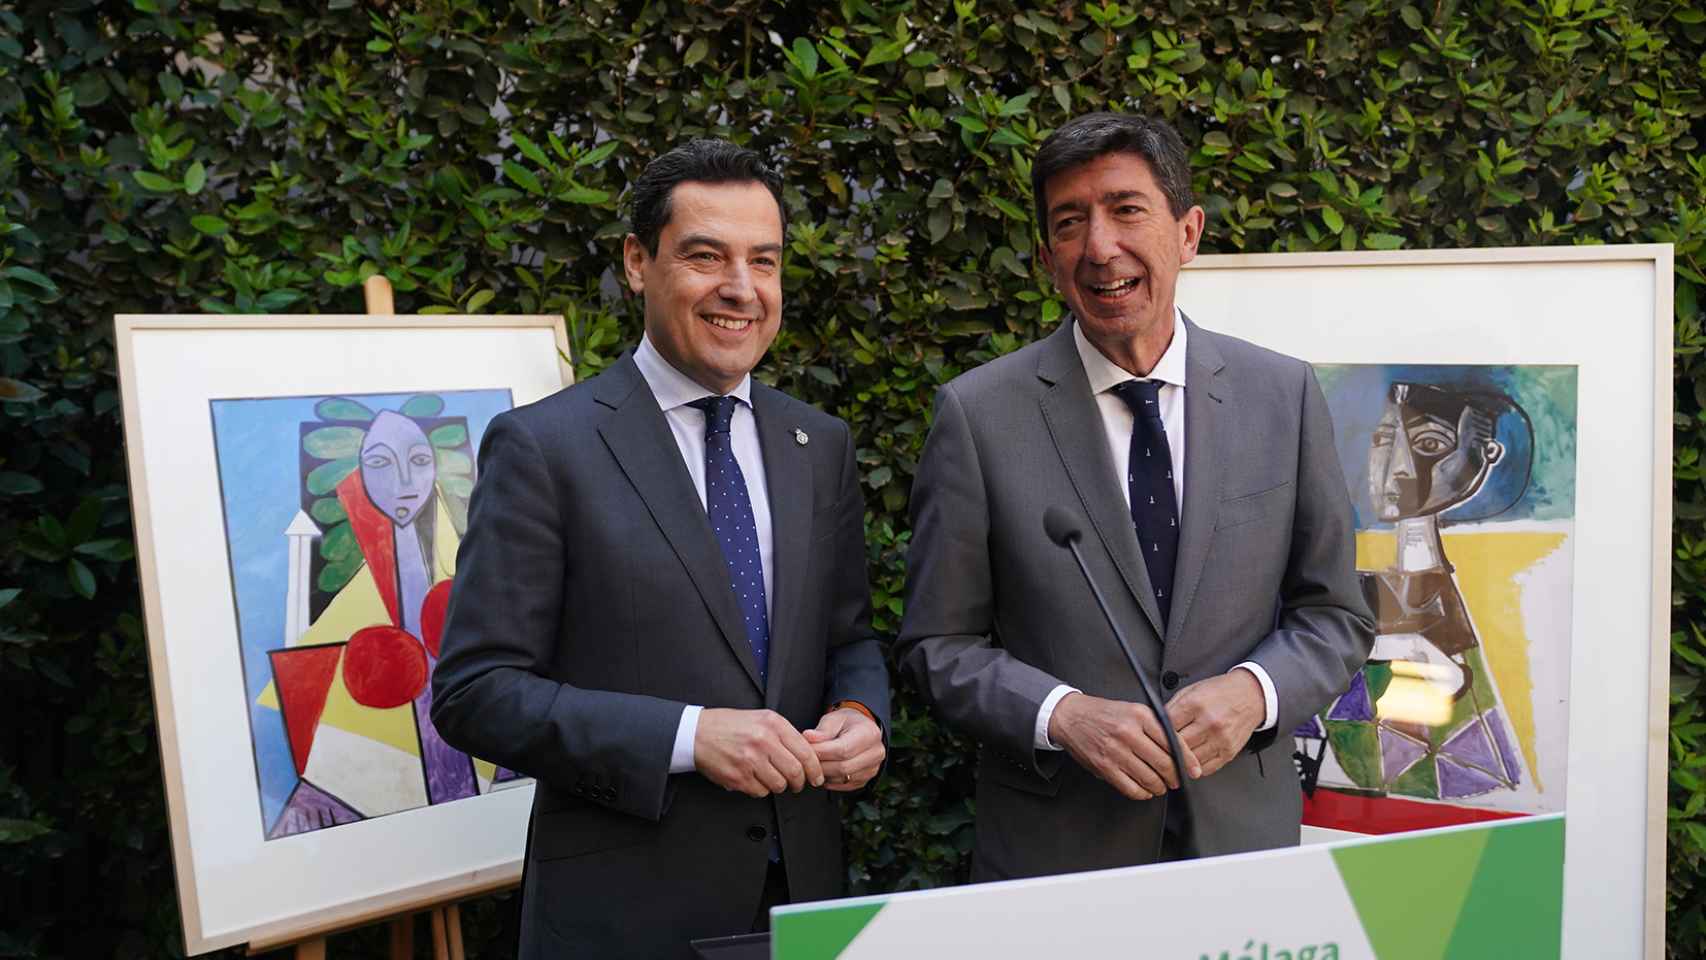 El presidente andaluz, Juanma Moreno (PP), junto al vicepresidente Juan Marín (Cs). Ambos hicieron un 'pacto entre perdedores' para gobernar frente a la lista más votada: el PSOE de Susana Díaz.